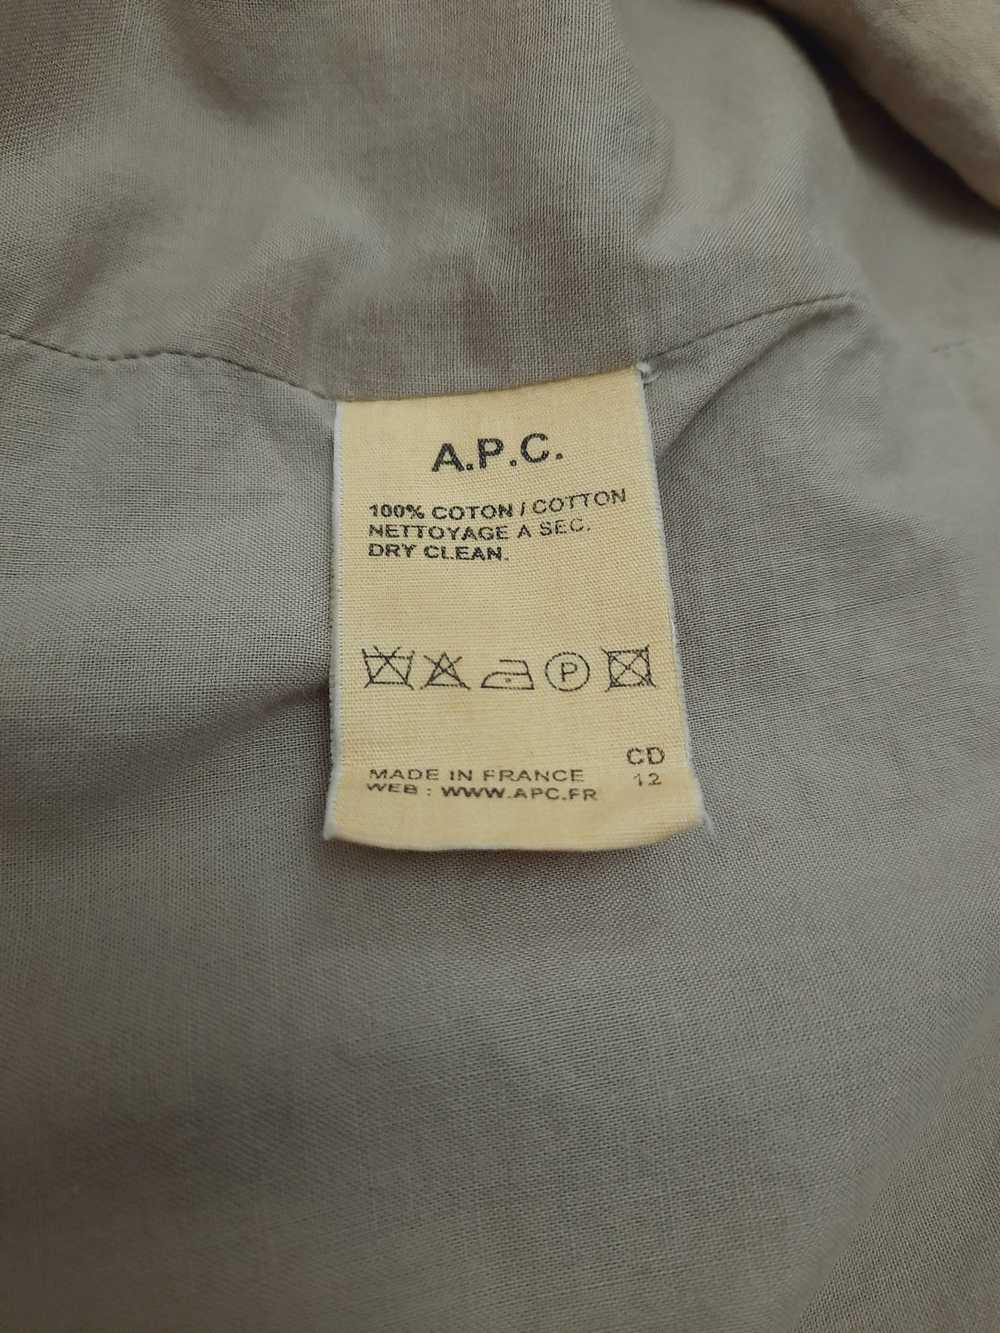 A.P.C. A P C cotton jacket - image 5